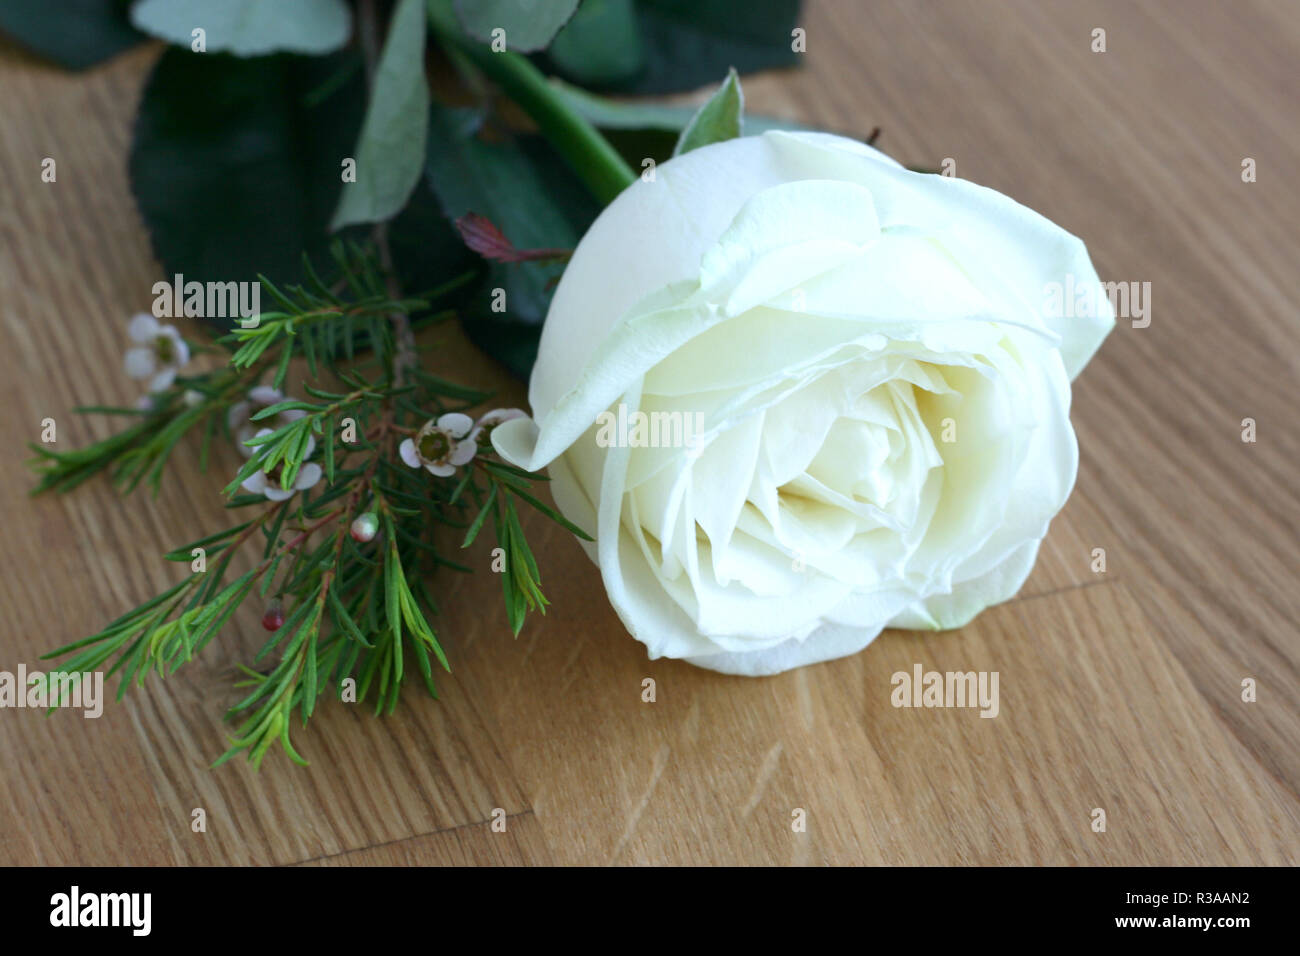 white rose on wood Stock Photo